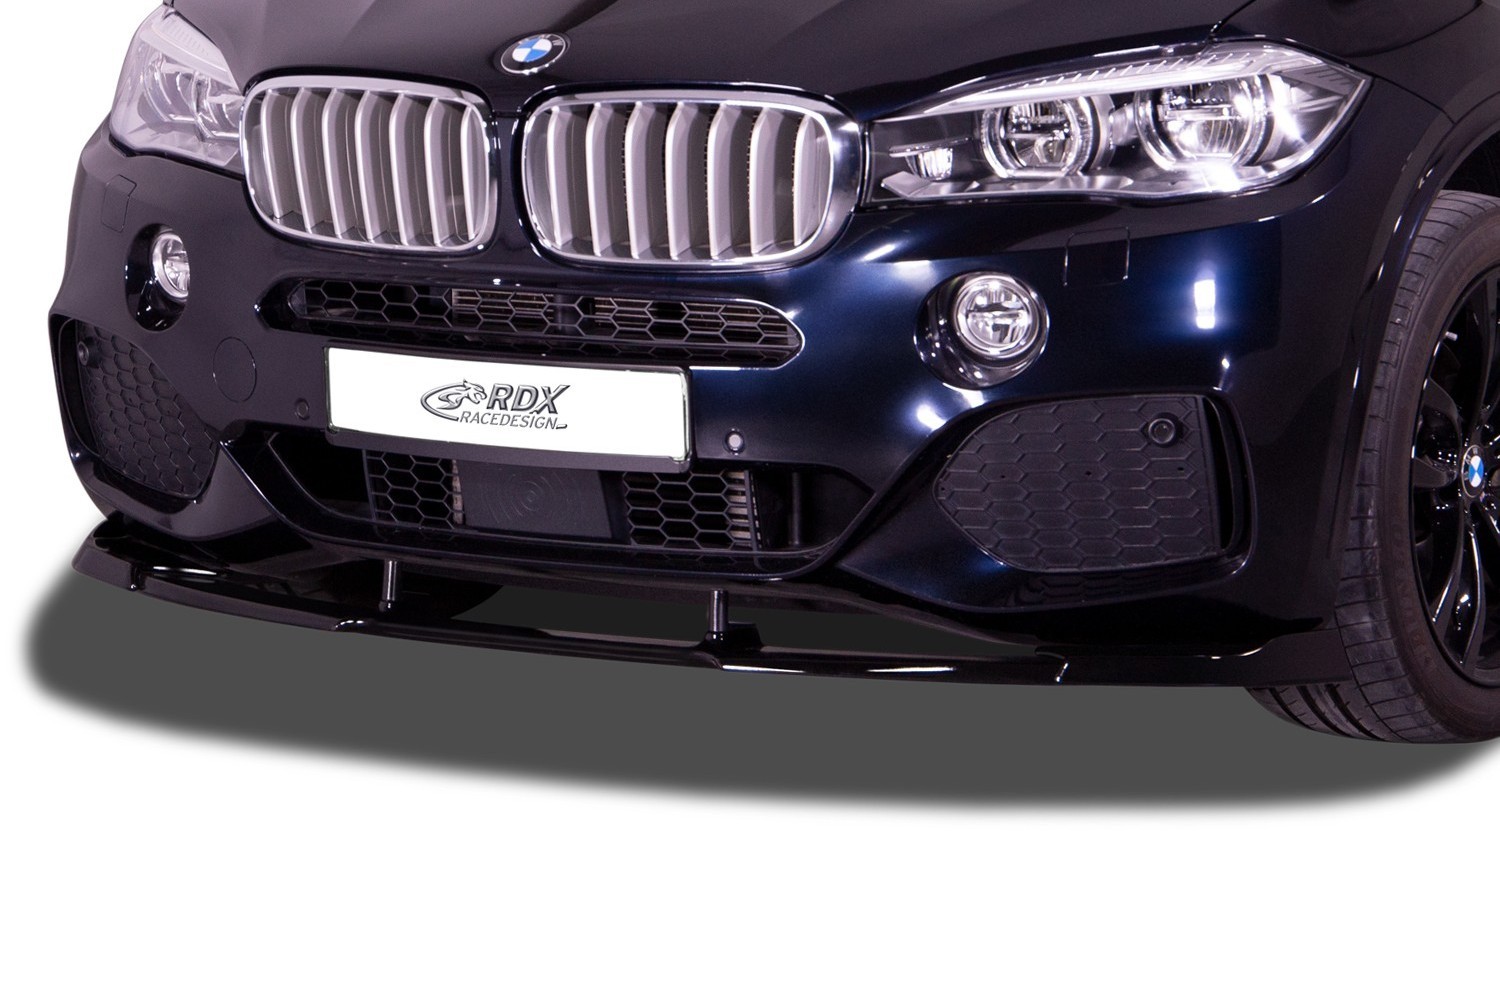 BMW X5 (F15) 2013-2018